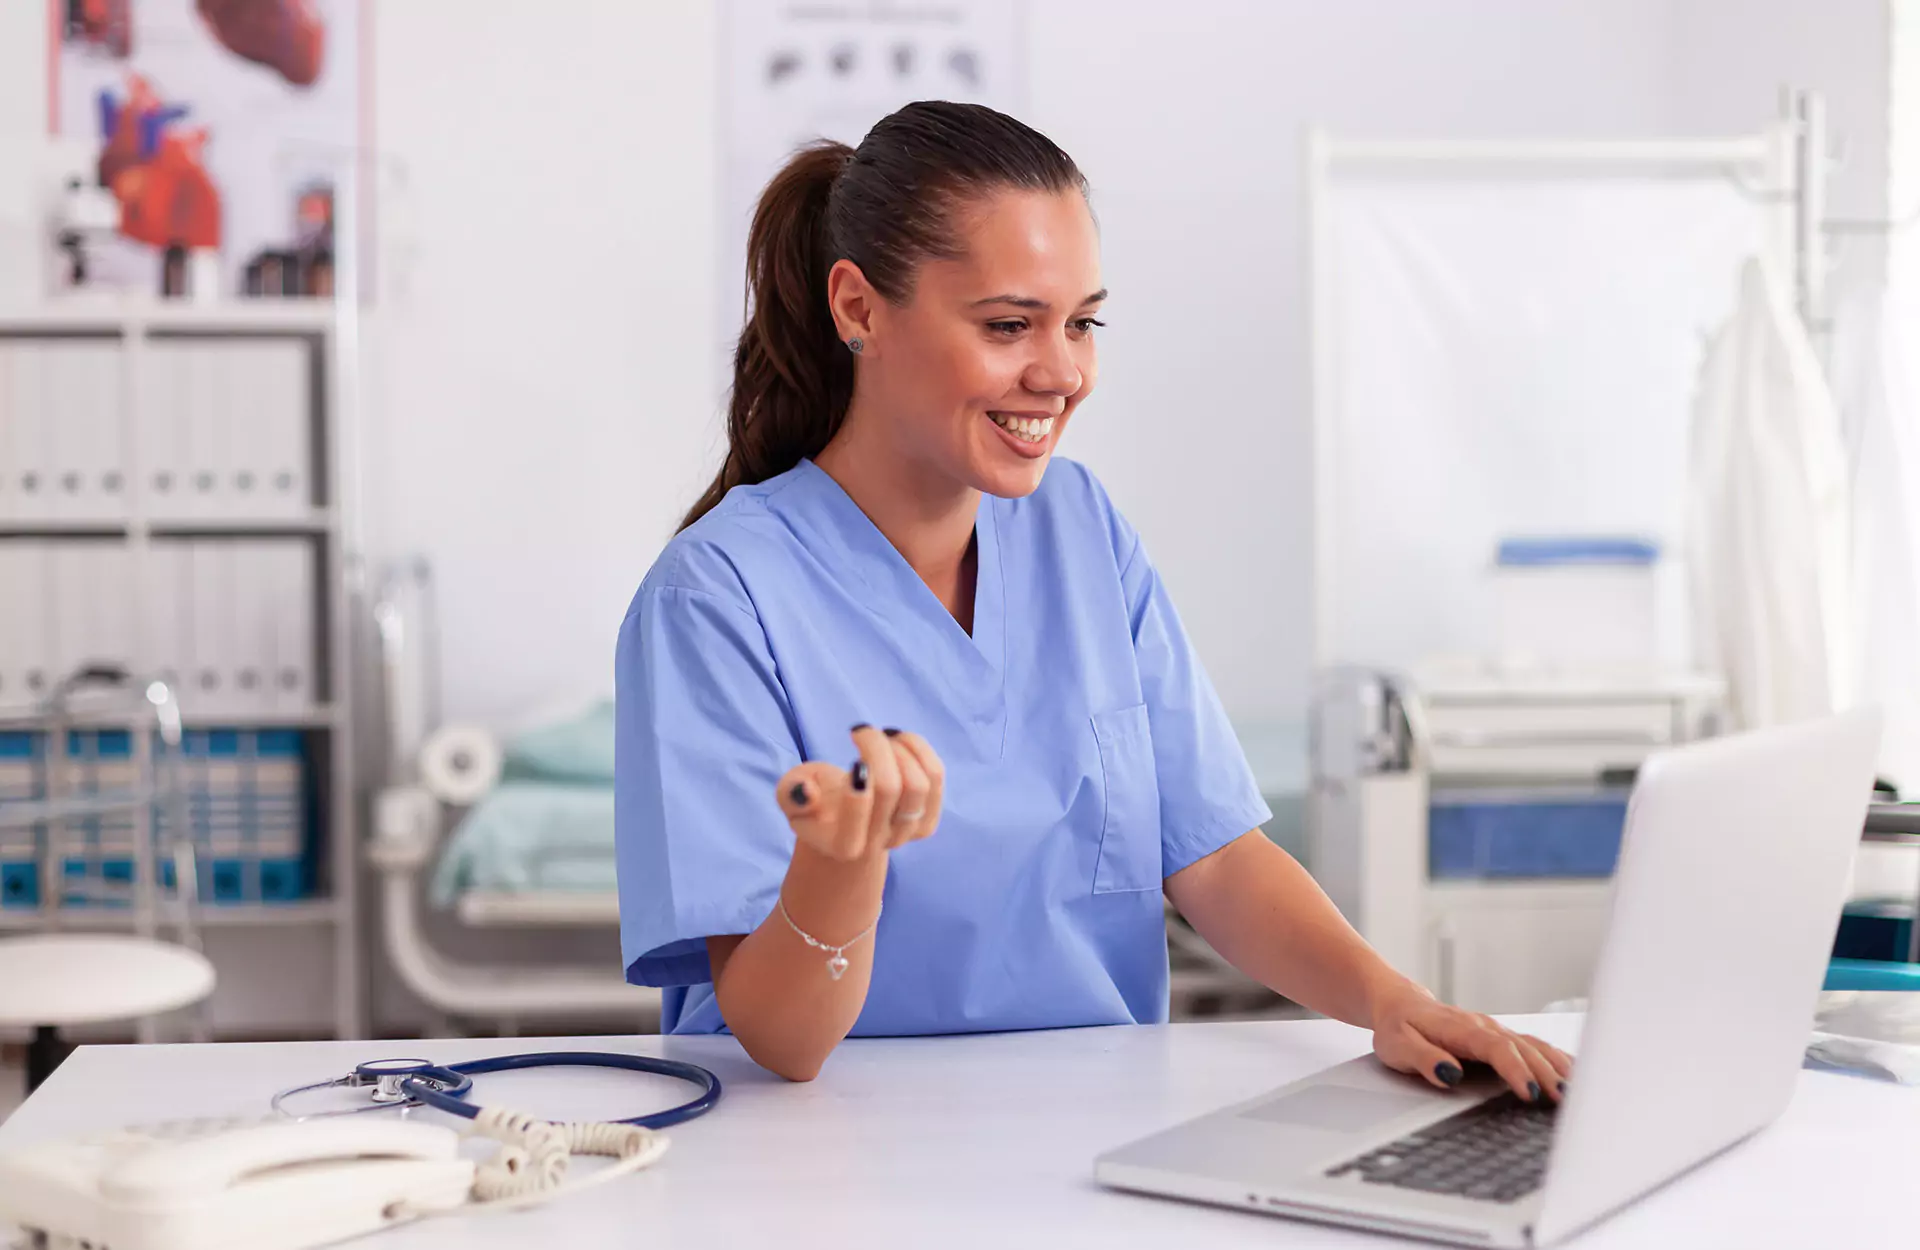 Nurse smiling at Laptop